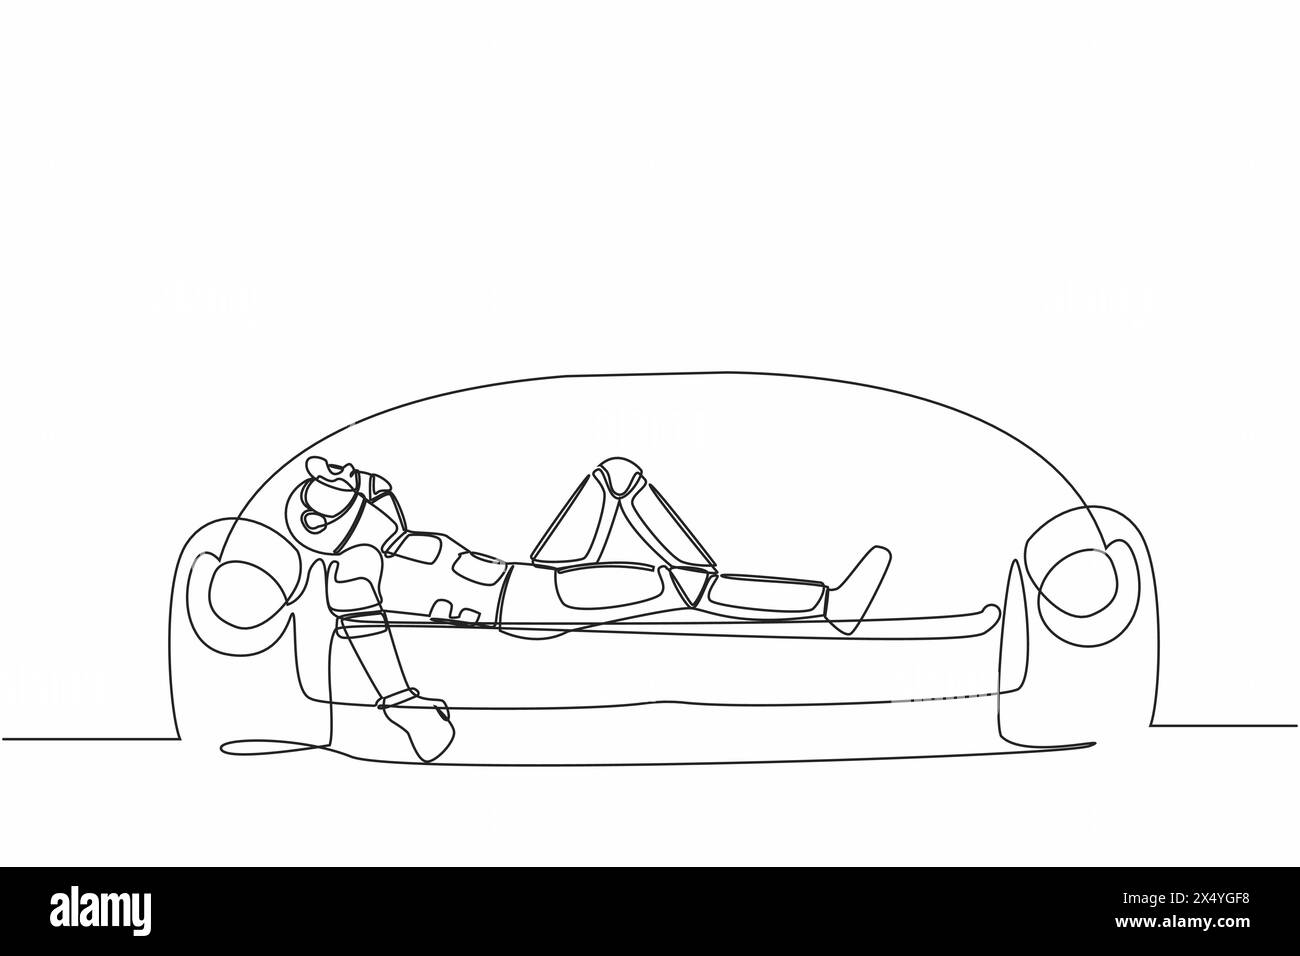 Une seule ligne continue dessinant un astronaute déprimé tenant sa tête couchée sur un canapé. Stress et anxiété face à l'échec du voyage spatial. Cosmonaute de l'espace profond Illustration de Vecteur